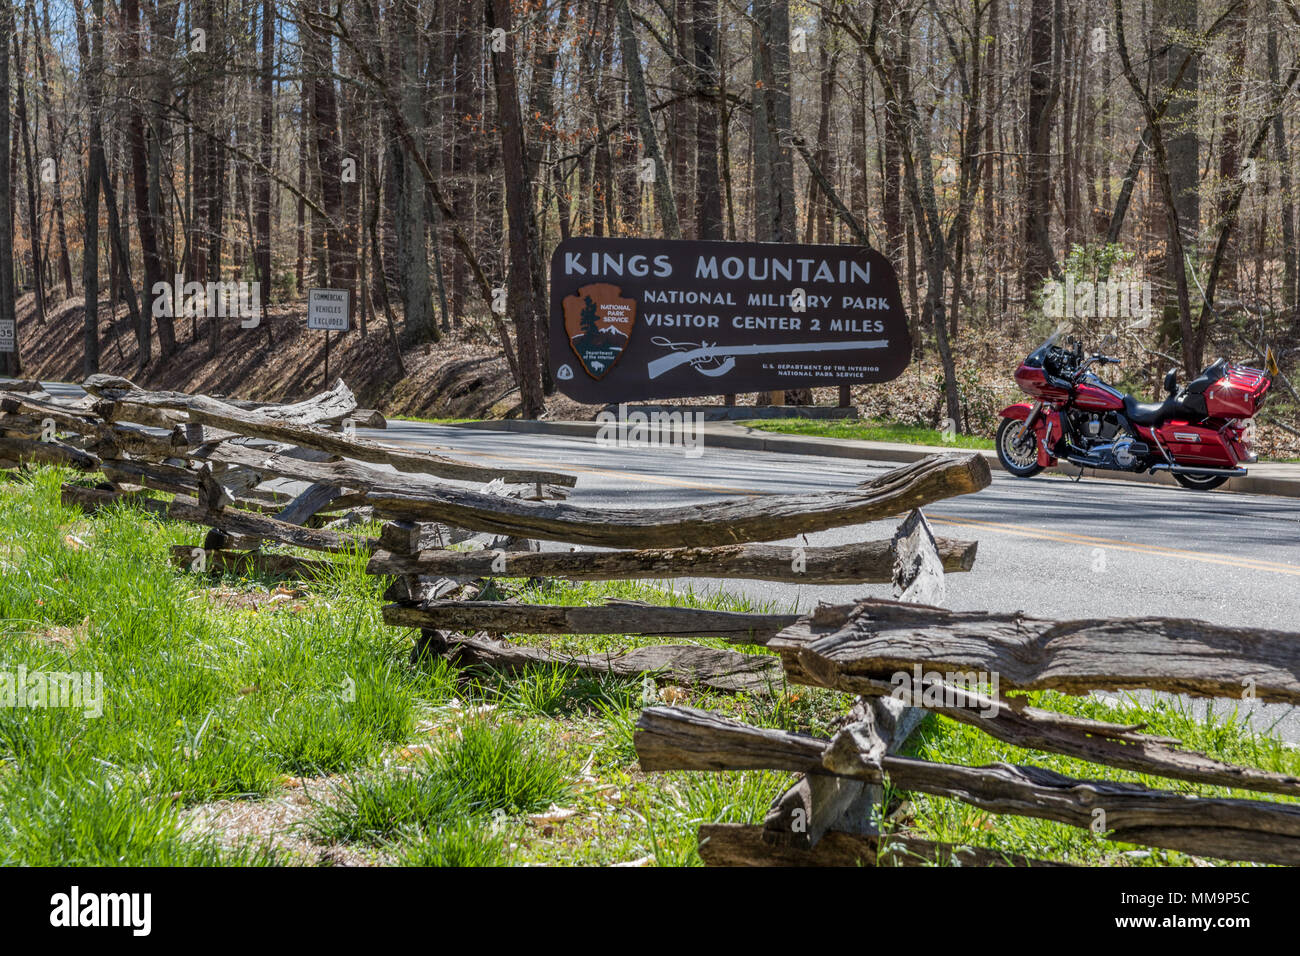 KINGS MTN. Il PARCO NAZIONALE MILITARE, BLACKSBURG, SC, Stati Uniti d'America - 1 aprile : un motociclo è visto attraverso una split-cancellata, accanto all'ingresso del King's Mtn. Foto Stock